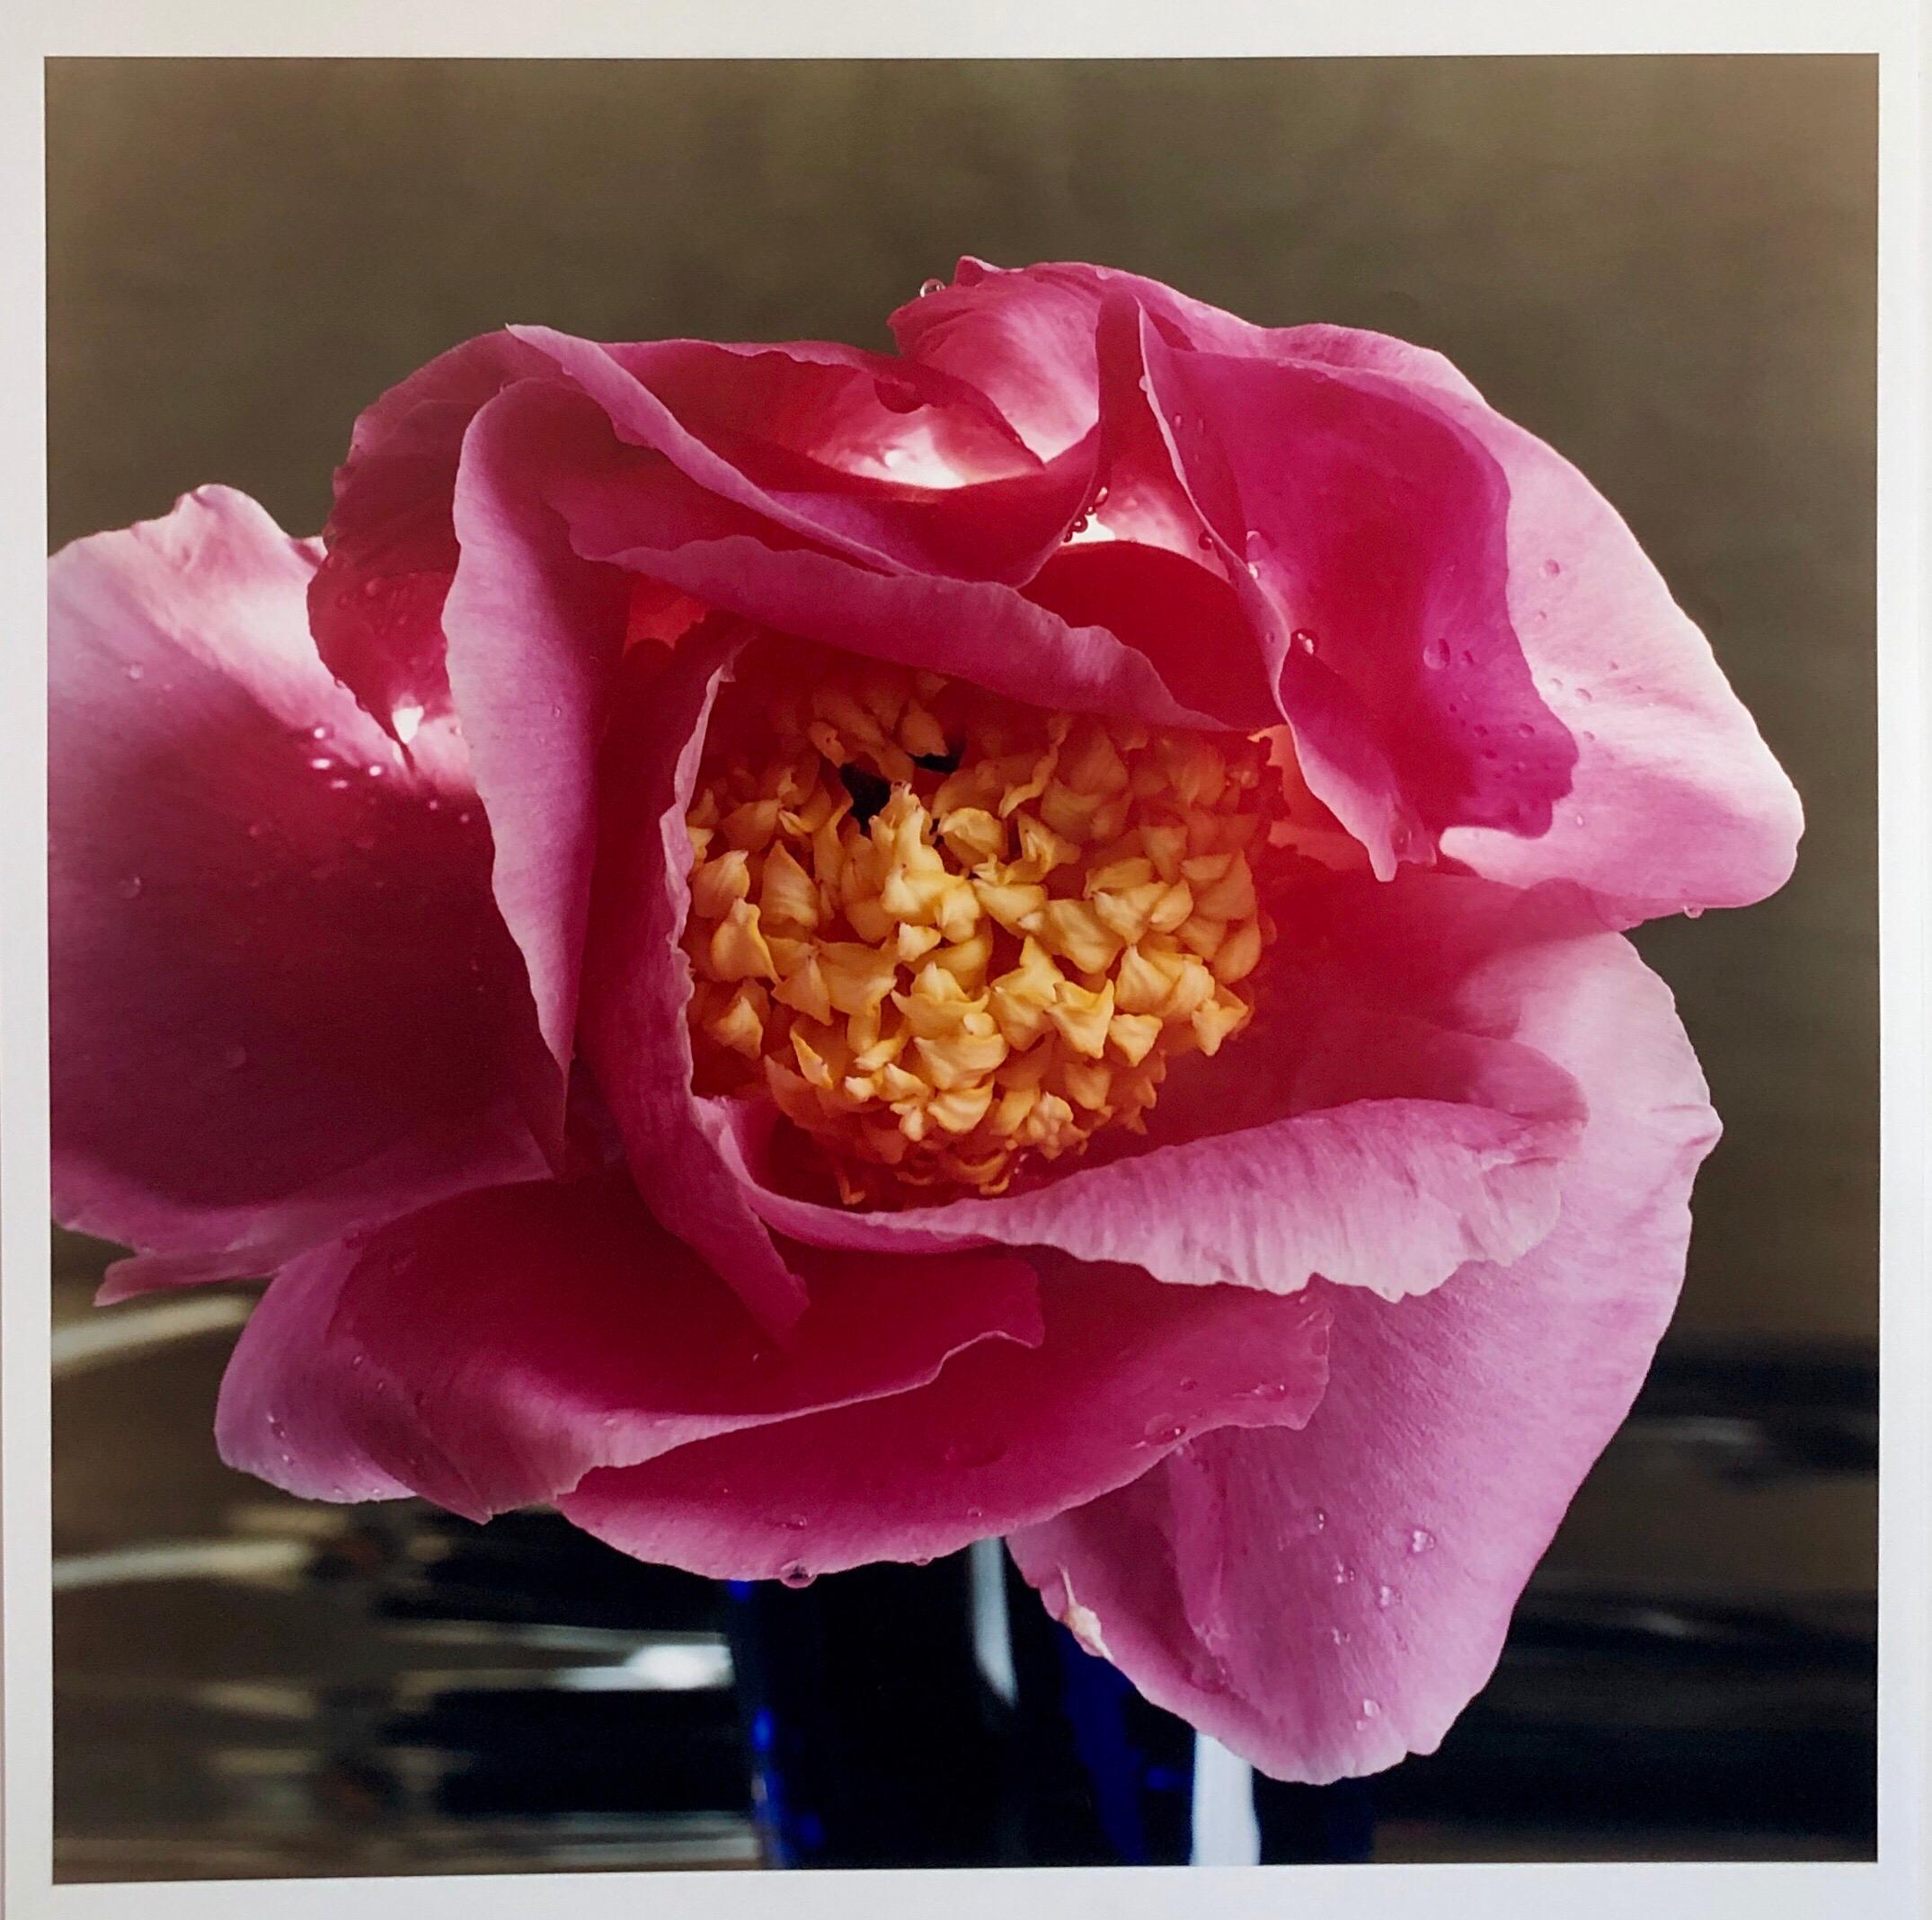 Peter C. Jones  Still-Life Photograph – Bientot, Großformatige Blumenfotografie 24X20, Farbfotografie Strandhaus, Bientot